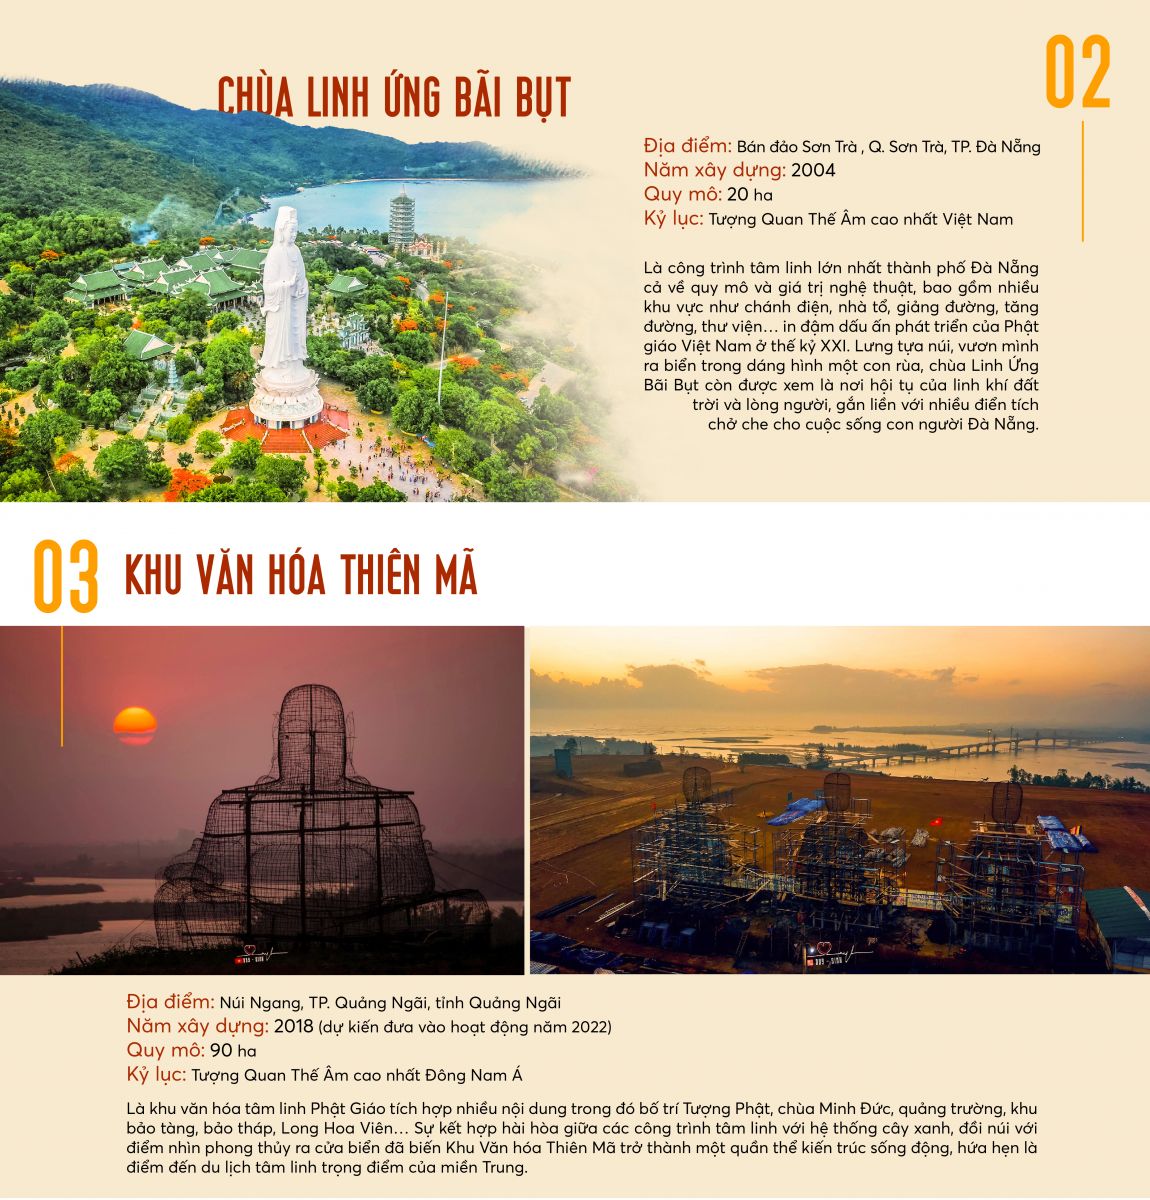 [INFORGRAPHIC] XUẤT HIỆN CÔNG TRÌNH TÂM LINH KỶ LỤC MỚI TẠI QUẢNG NGÃI - Viet Nam Smart City